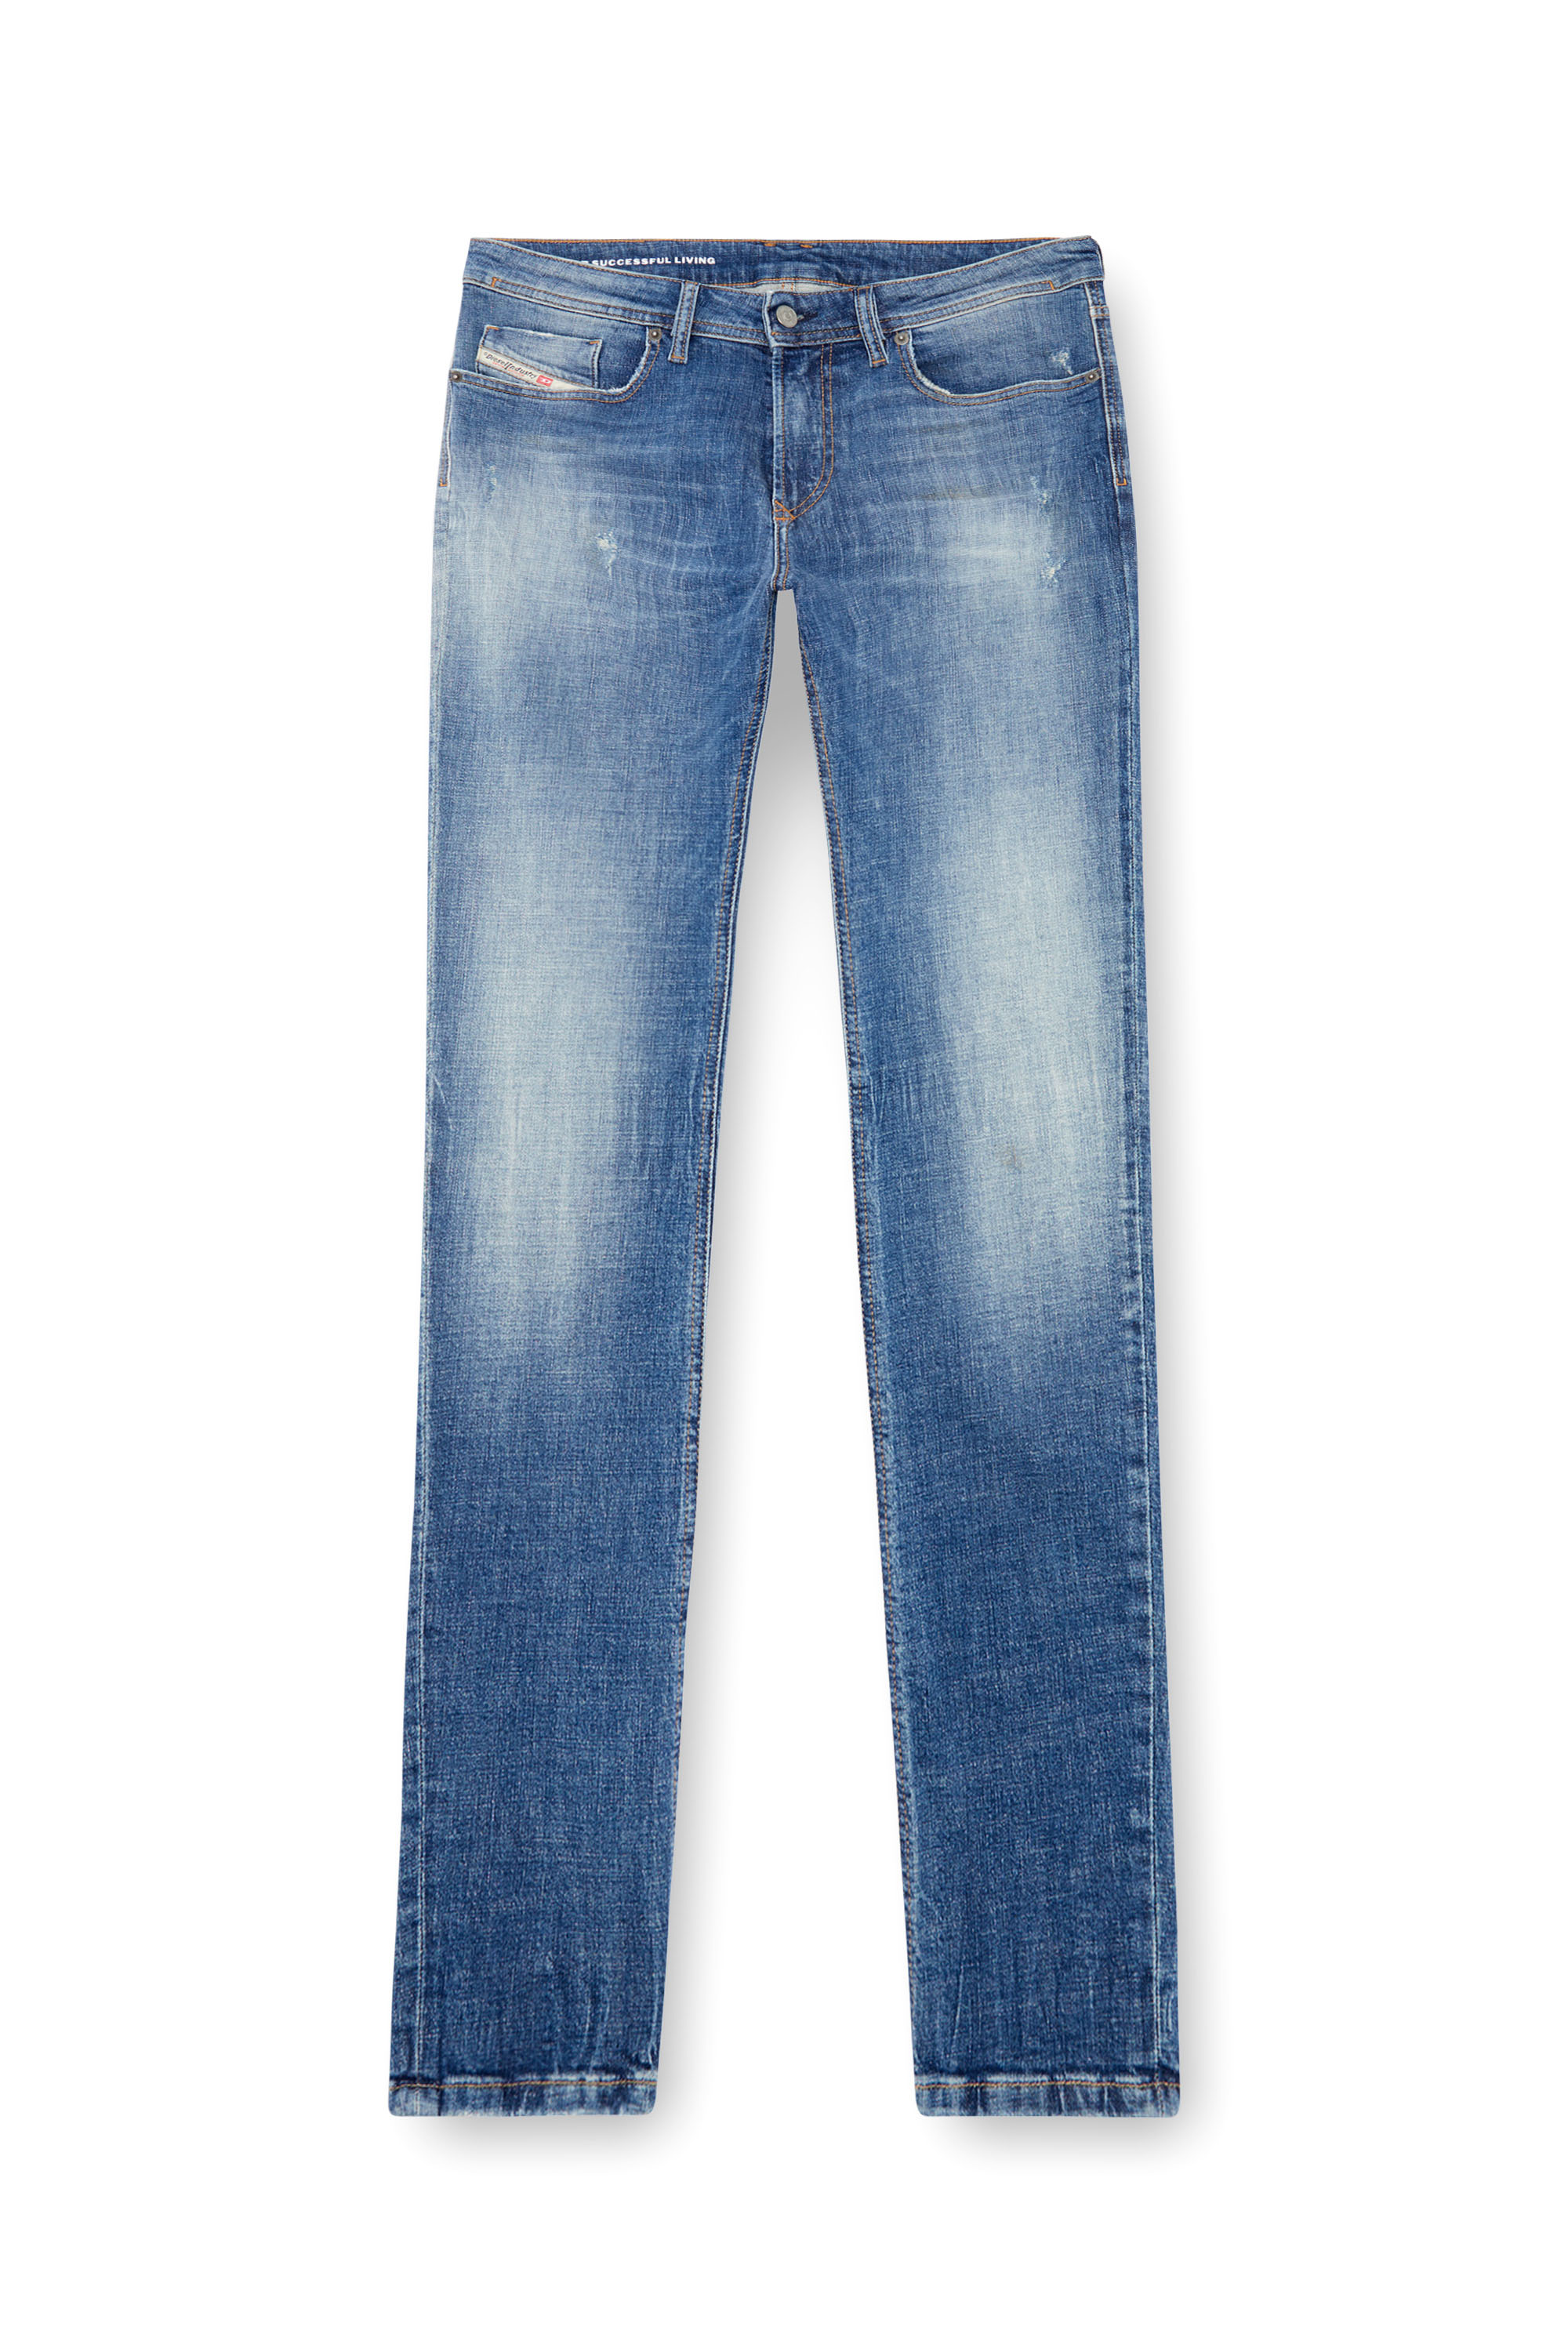 Diesel - Skinny Jeans 1979 Sleenker 0GRDF, Medium blue - Image 3